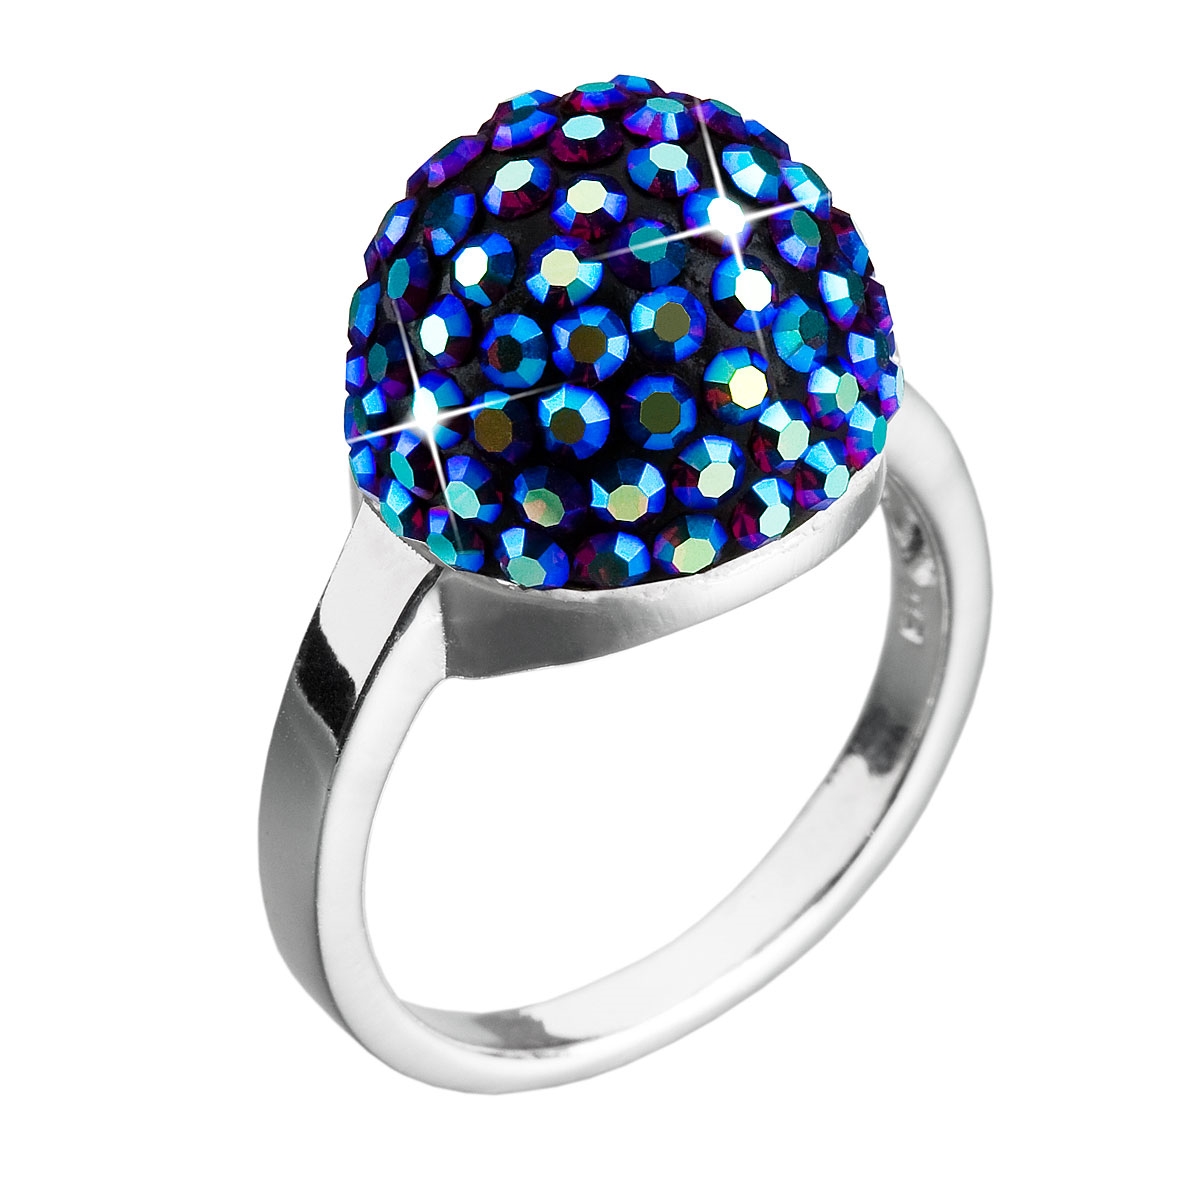 Strieborný prsteň s kryštálmi Crystals from Swarovski ®, BLUE